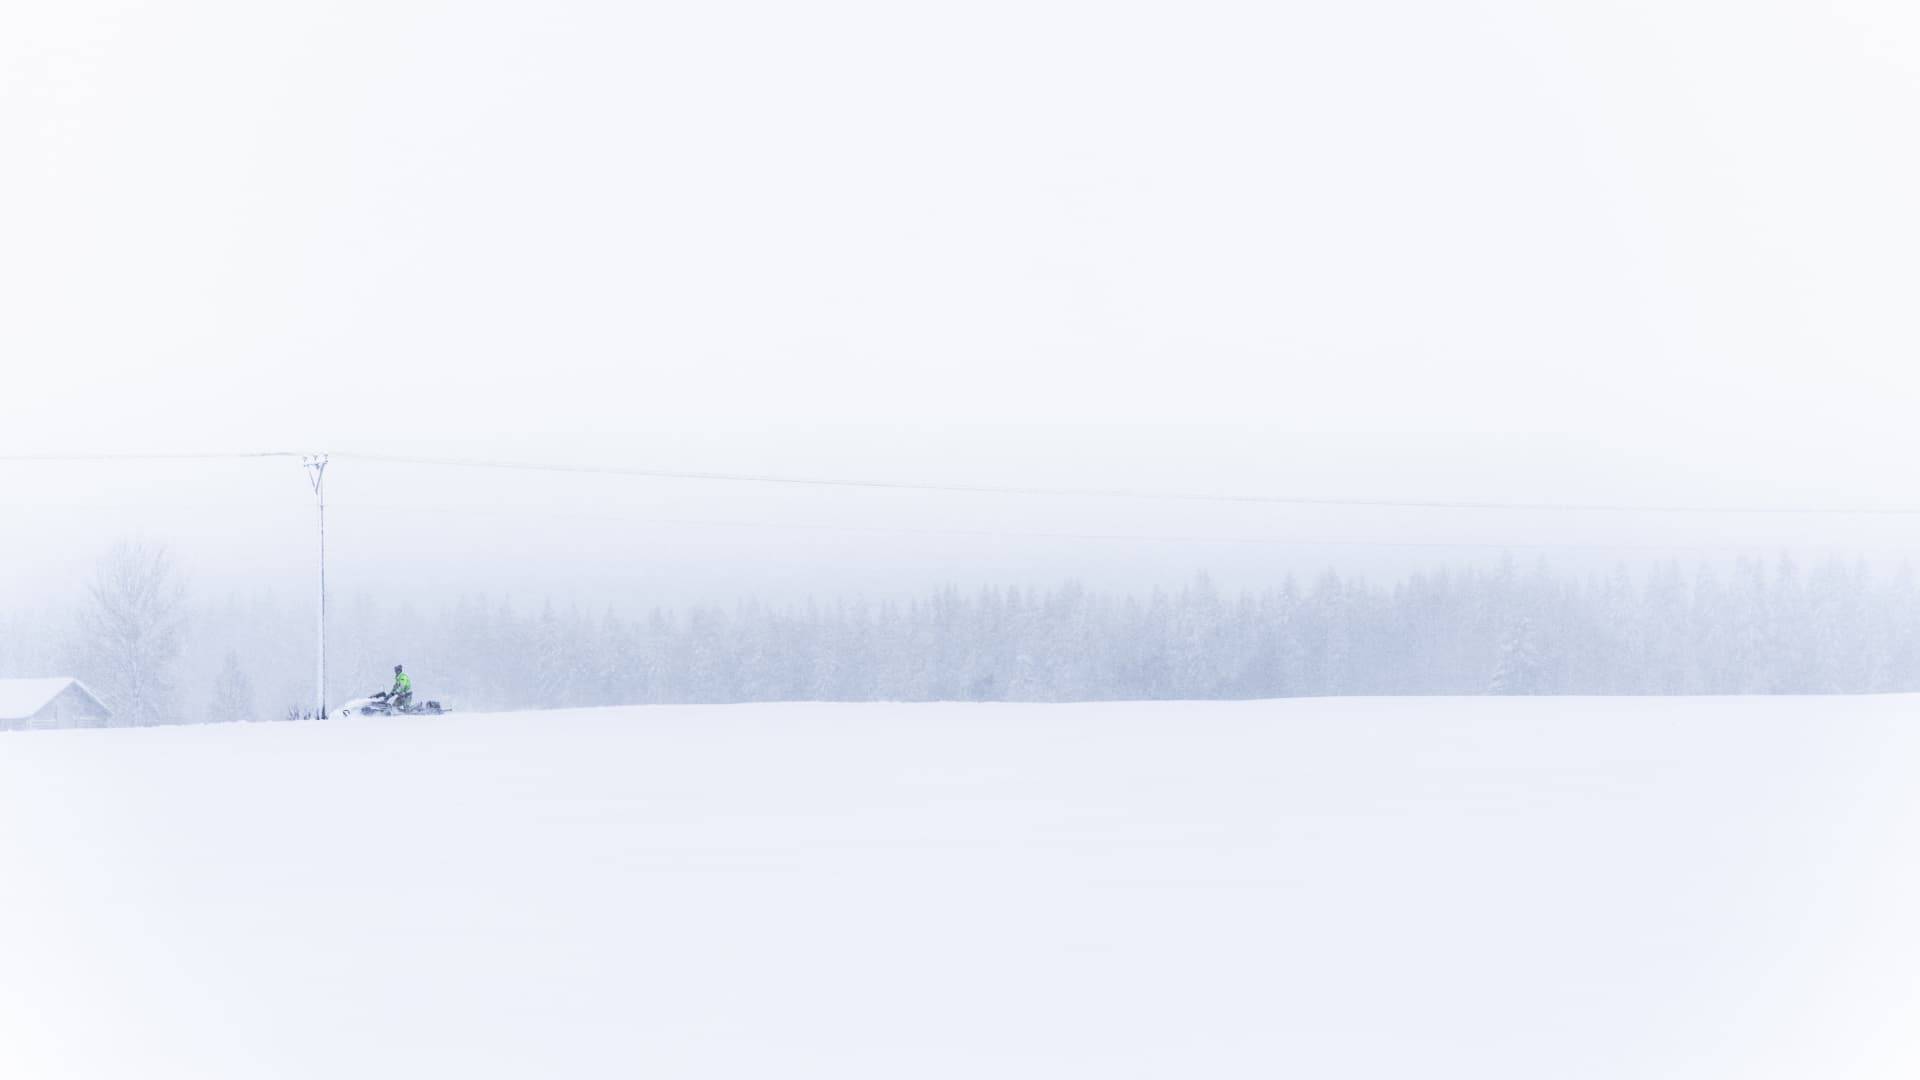 En skoter syns på håll vid en elledning i ett vitt och stormigt vinterlandskap.